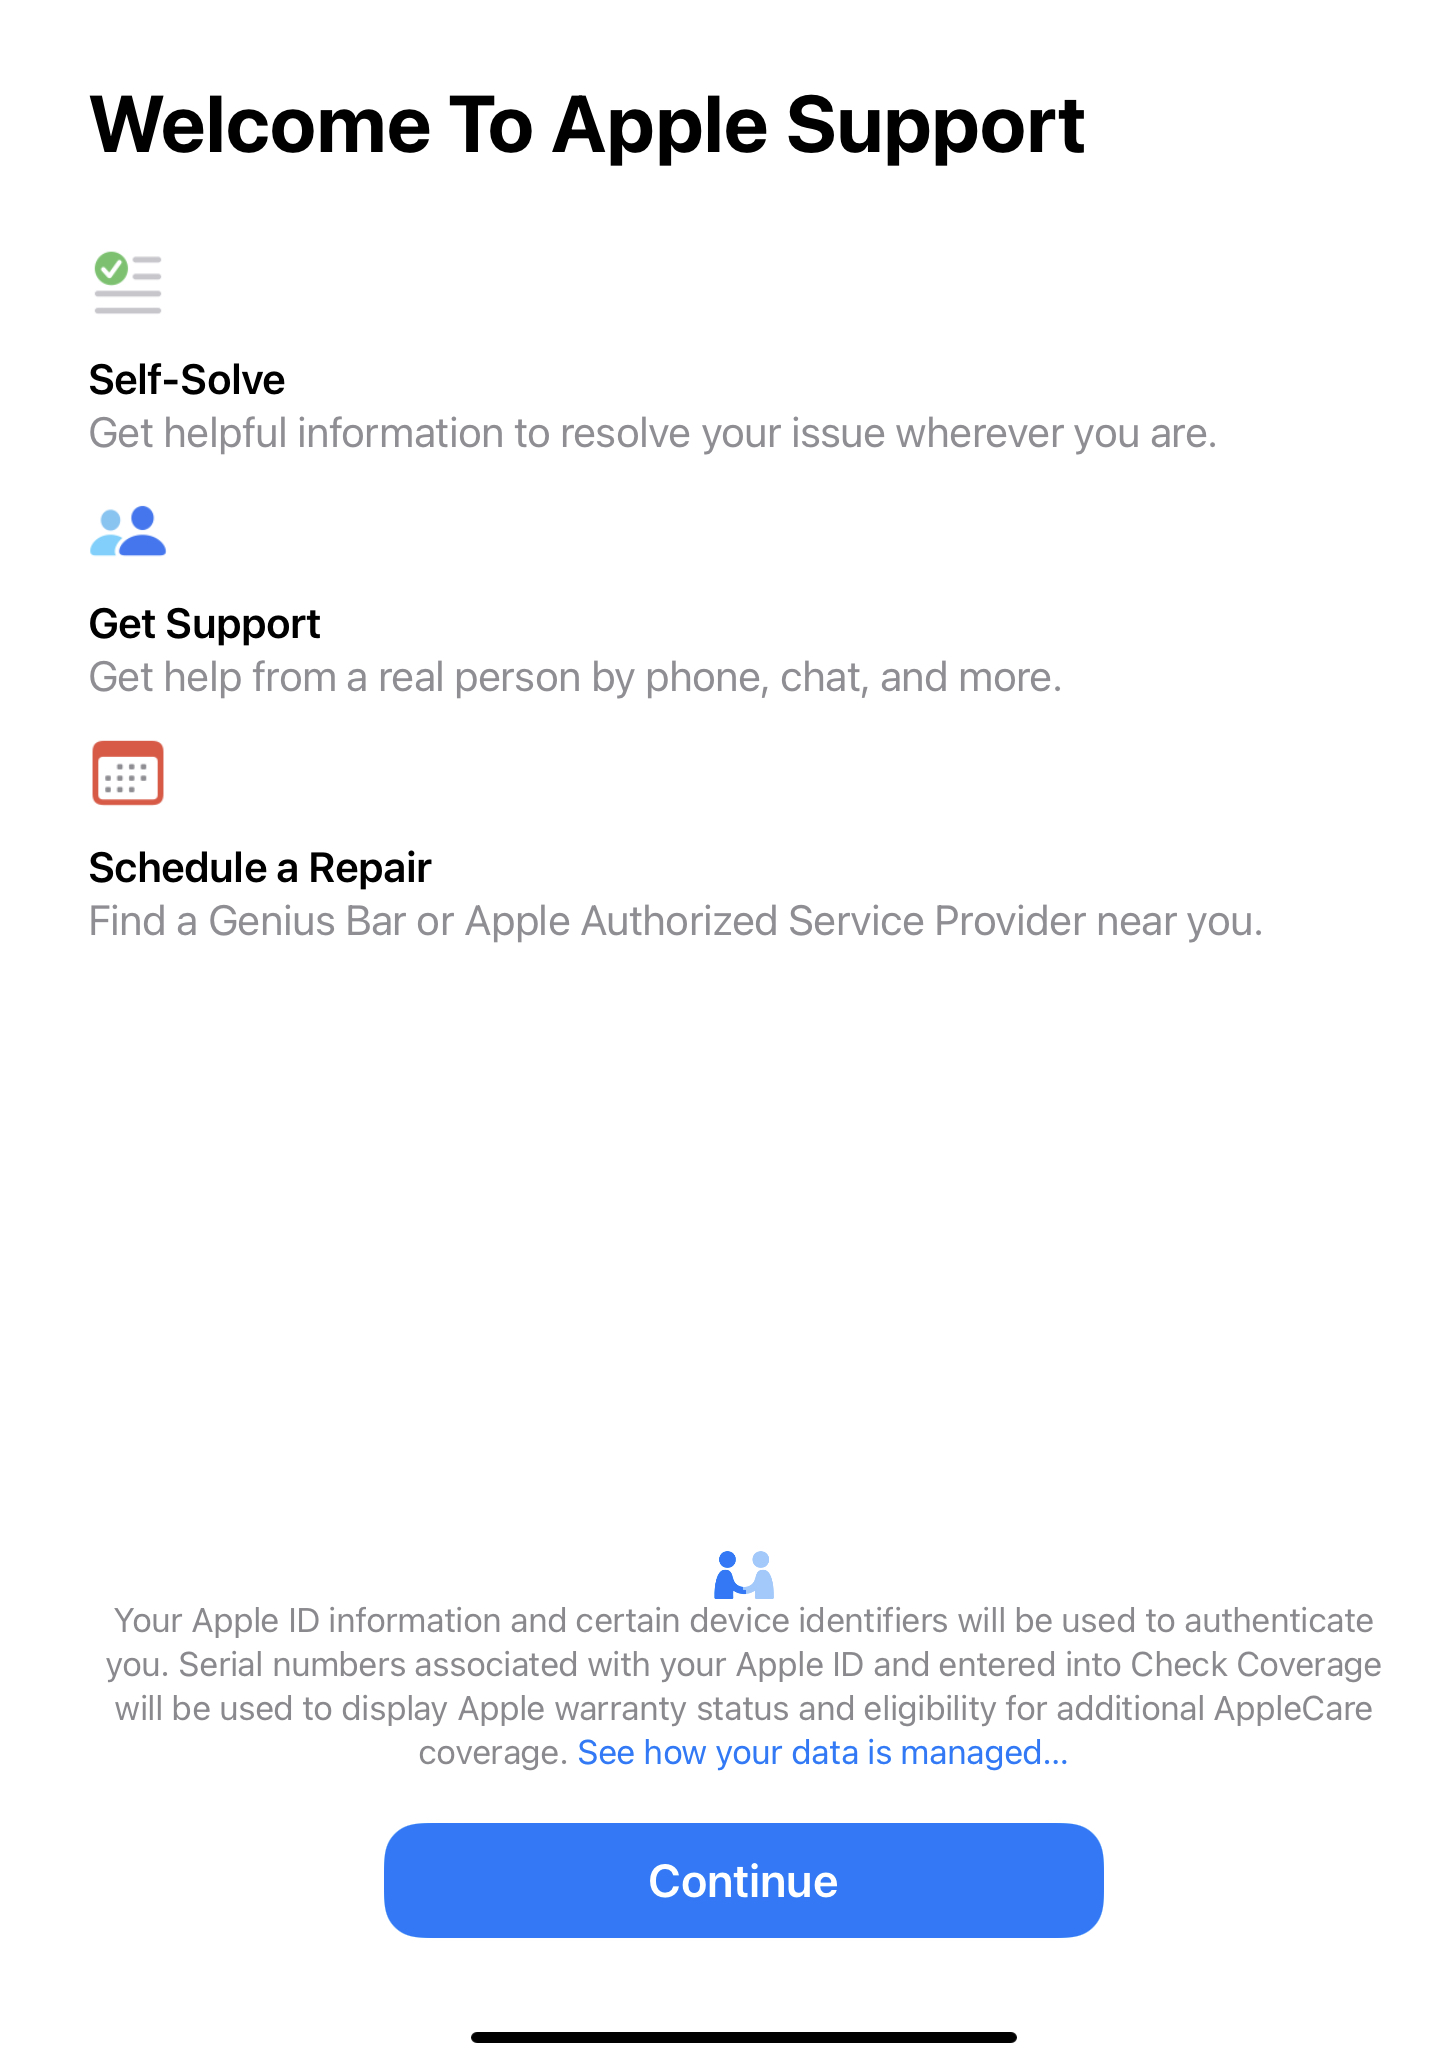 A tela de boas-vindas do aplicativo de suporte da Apple para usuários iniciantes explica o que o aplicativo faz